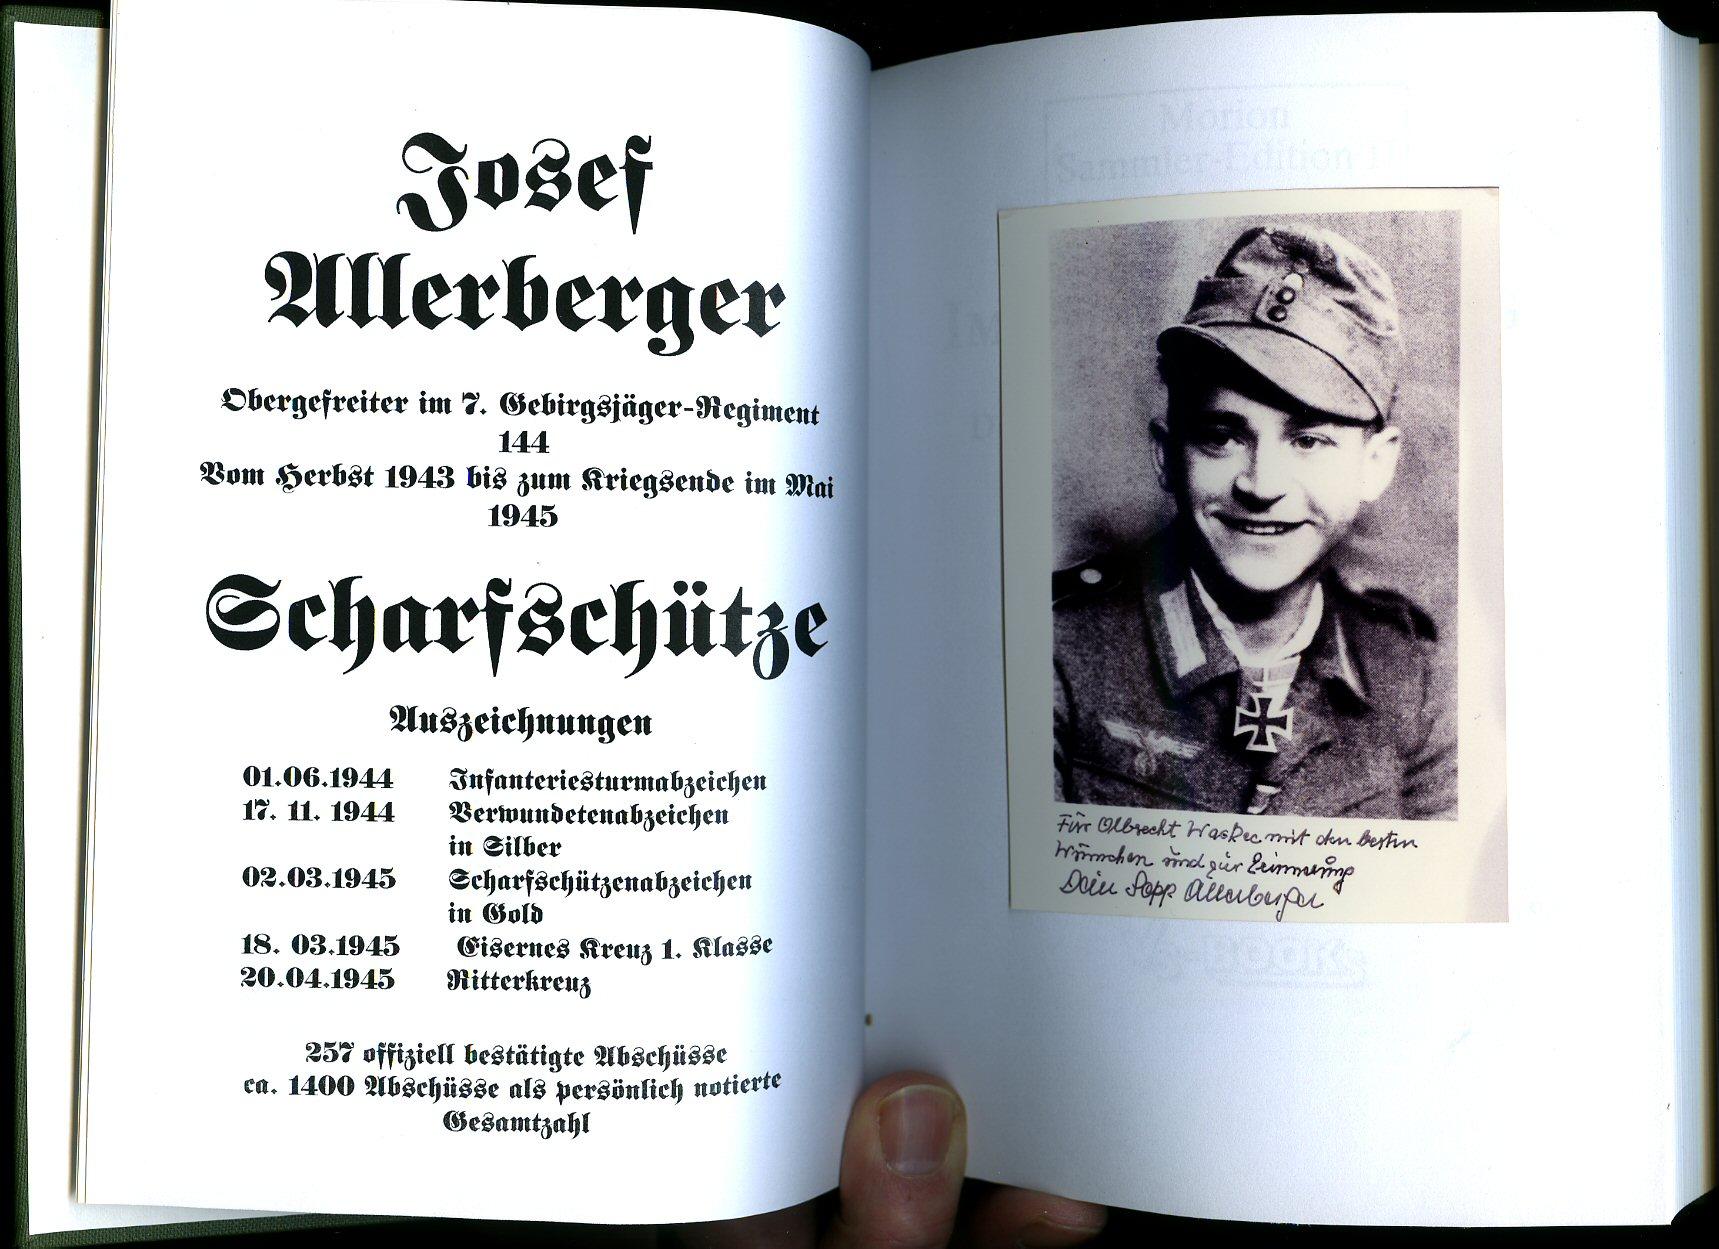 3 Gebirgs-Division Scharfschütze Sepp Allerberger Buch Im Auge des Jägers